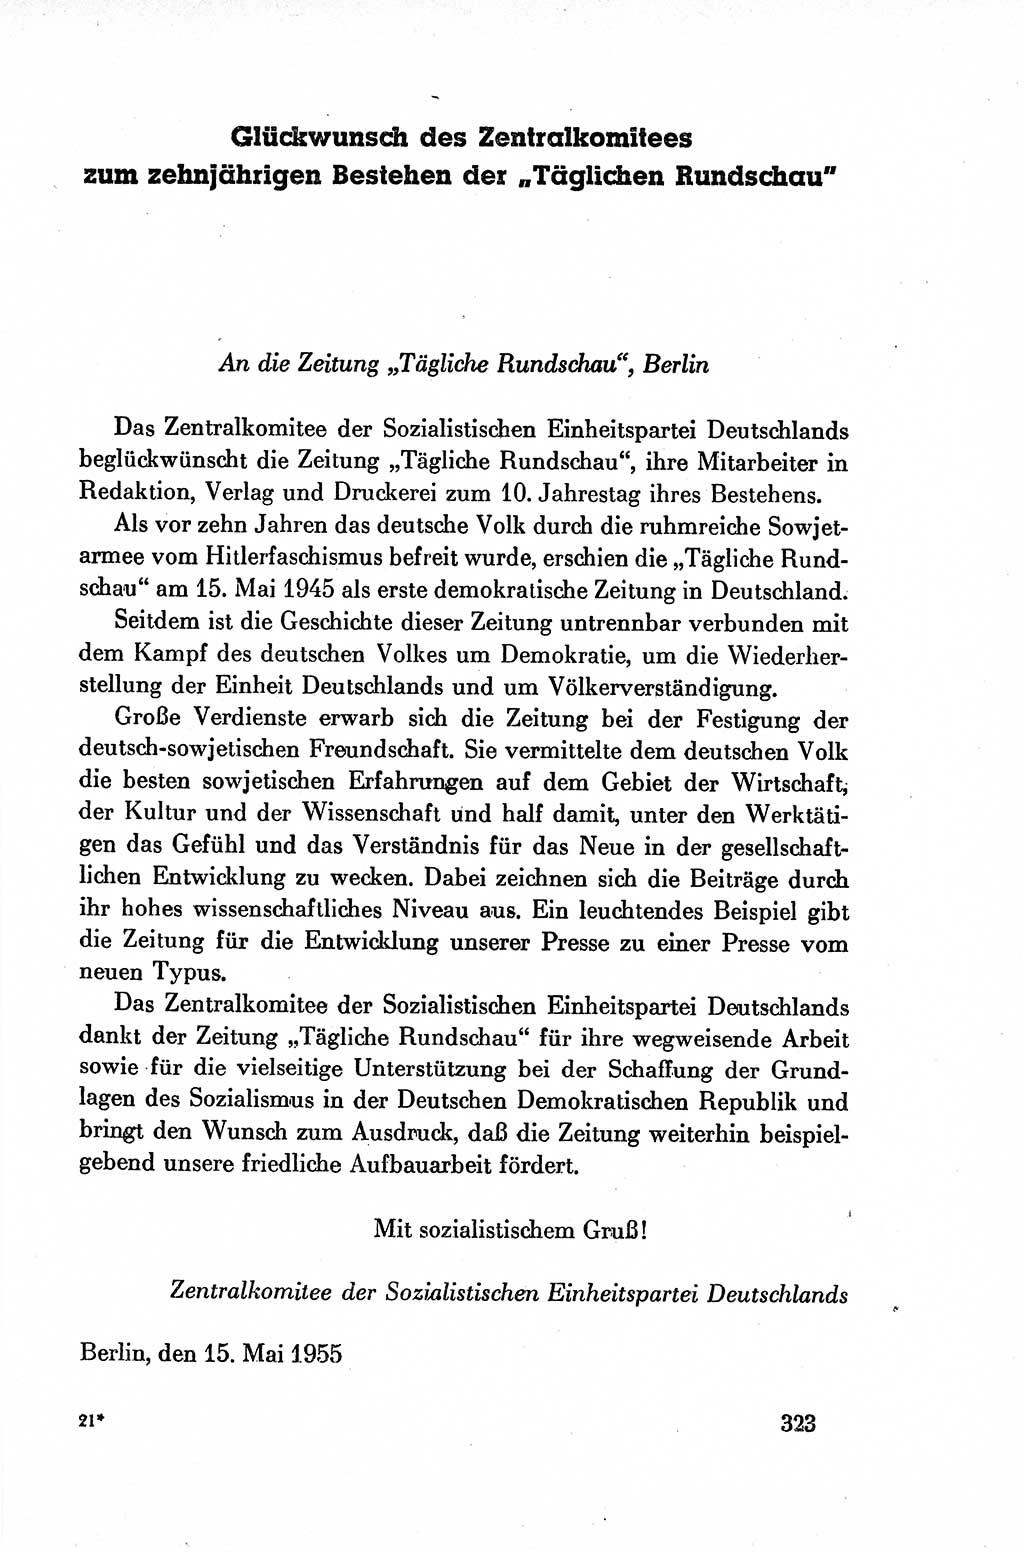 Dokumente der Sozialistischen Einheitspartei Deutschlands (SED) [Deutsche Demokratische Republik (DDR)] 1954-1955, Seite 323 (Dok. SED DDR 1954-1955, S. 323)